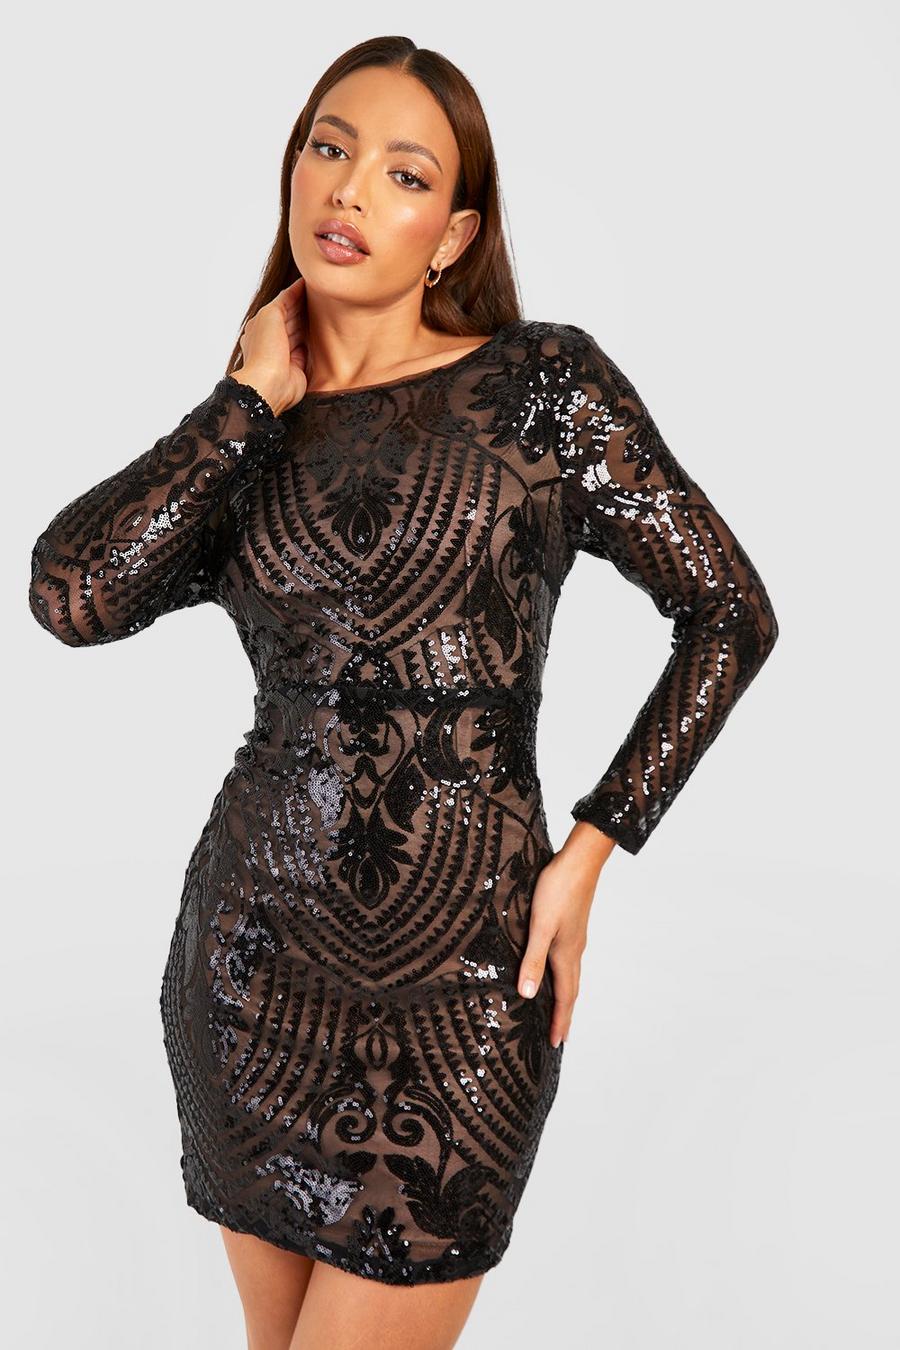 שחור negro שמלת מיני מבד דמשק עם פייטים ומחשוף גב נשפך, לנשים גבוהות